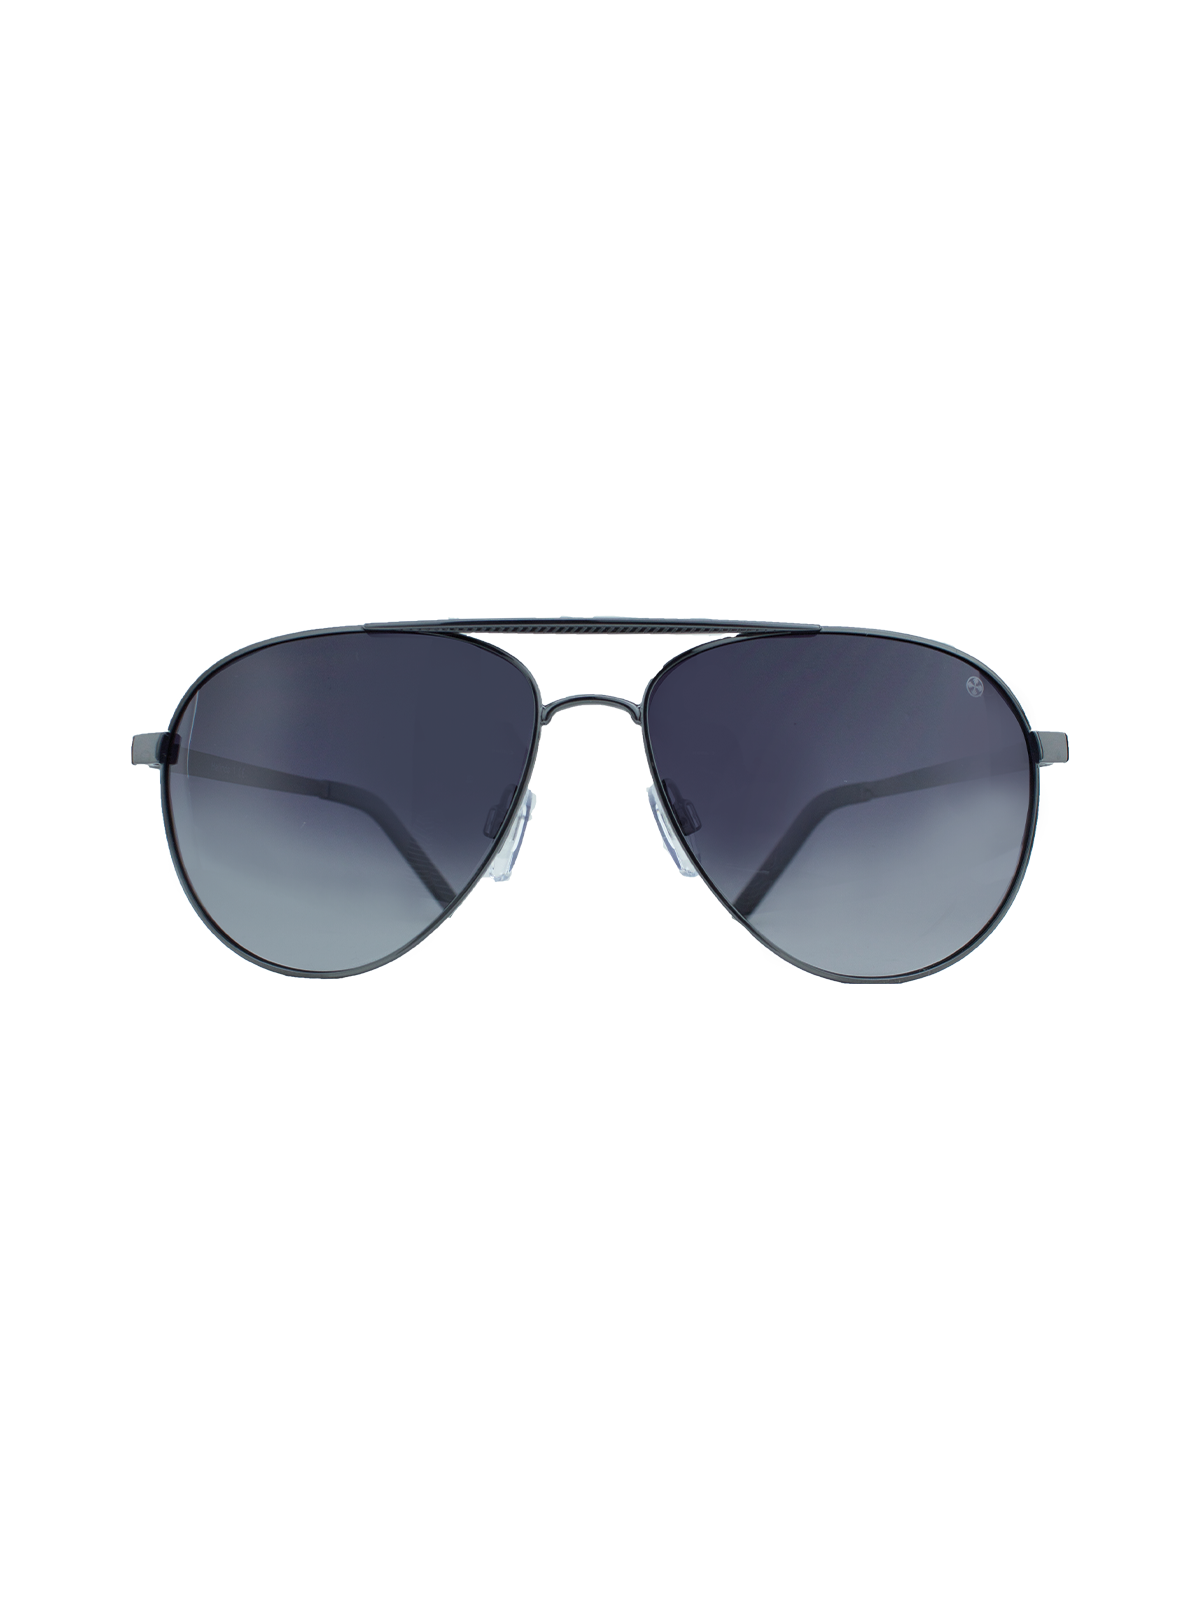 Helindo 1 Herren Sonnenbrille | Grau